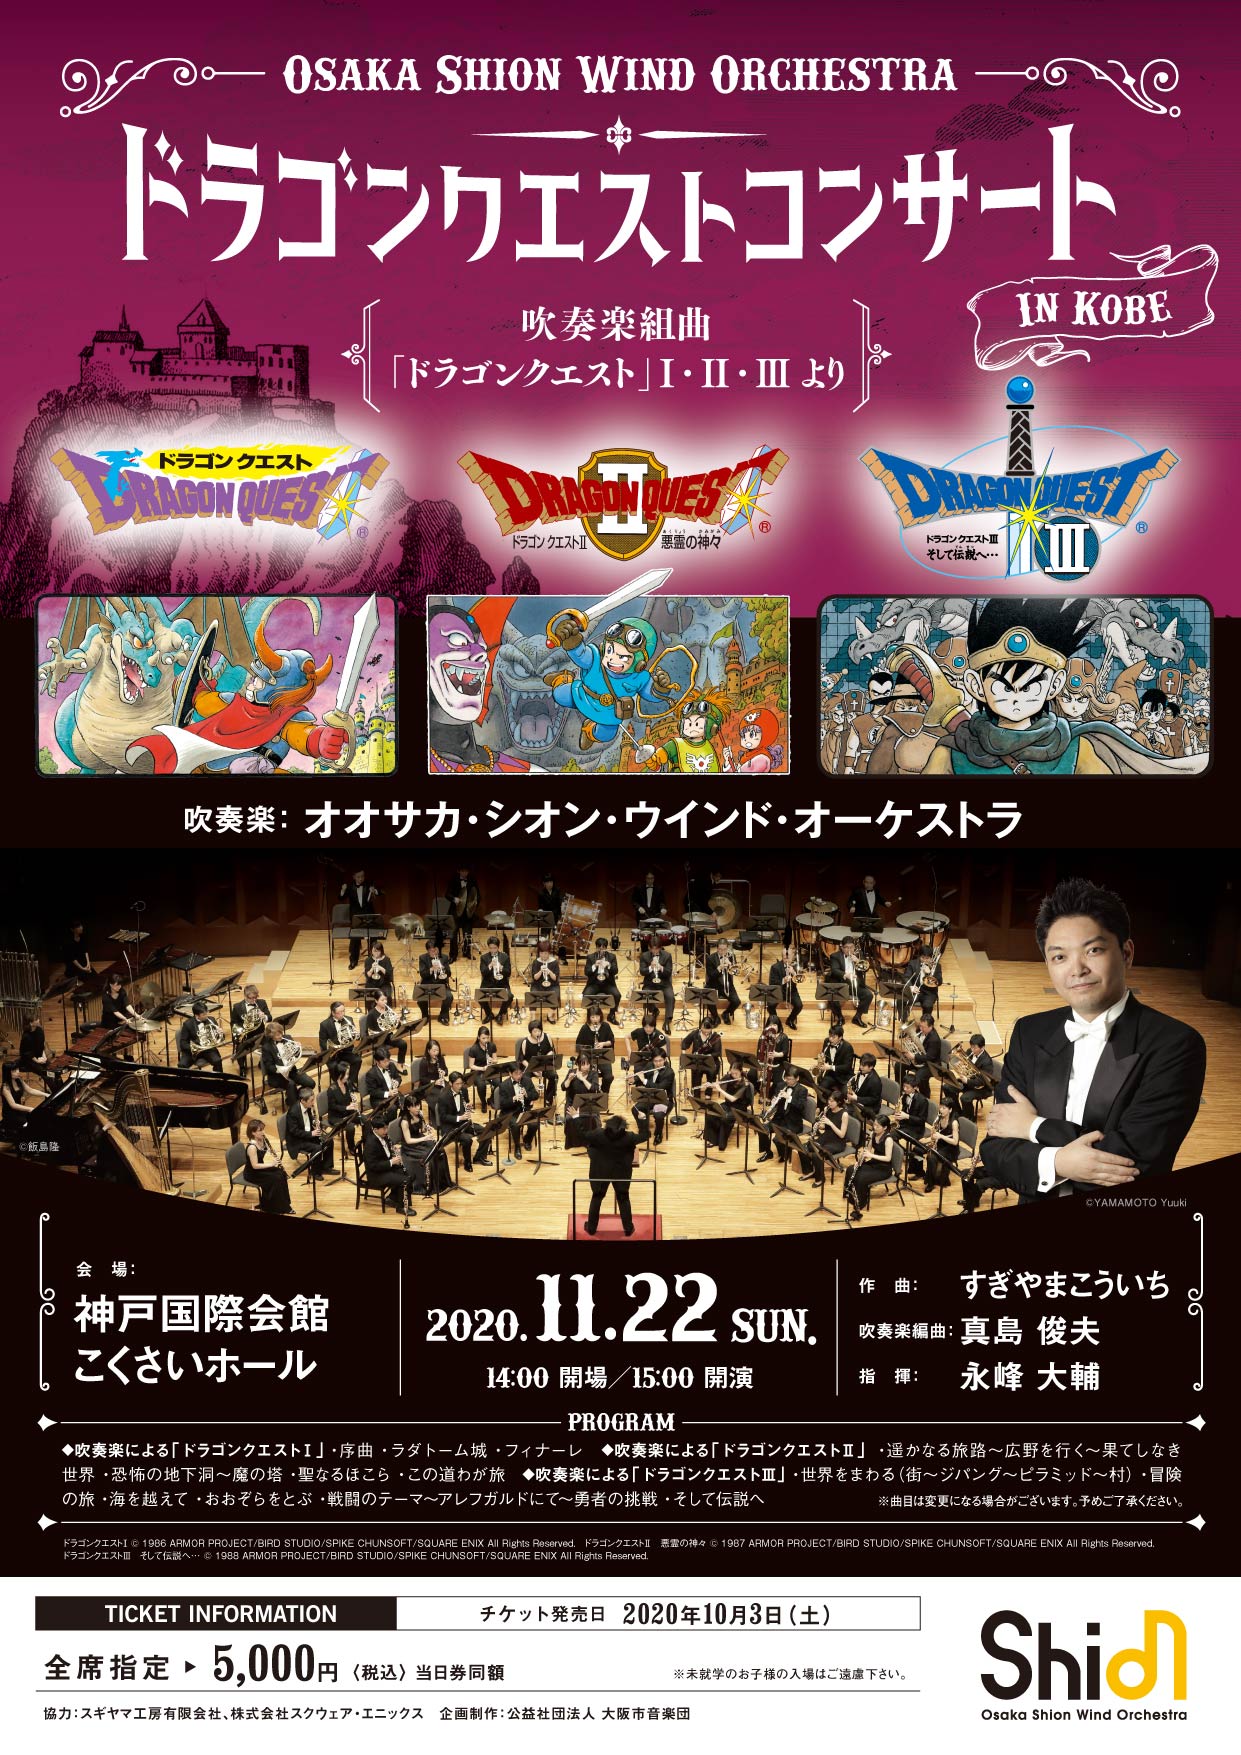 ドラゴンクエストコンサート In 神戸 コンサート情報 Osaka Shion Wind Orchestra 大阪市音楽団